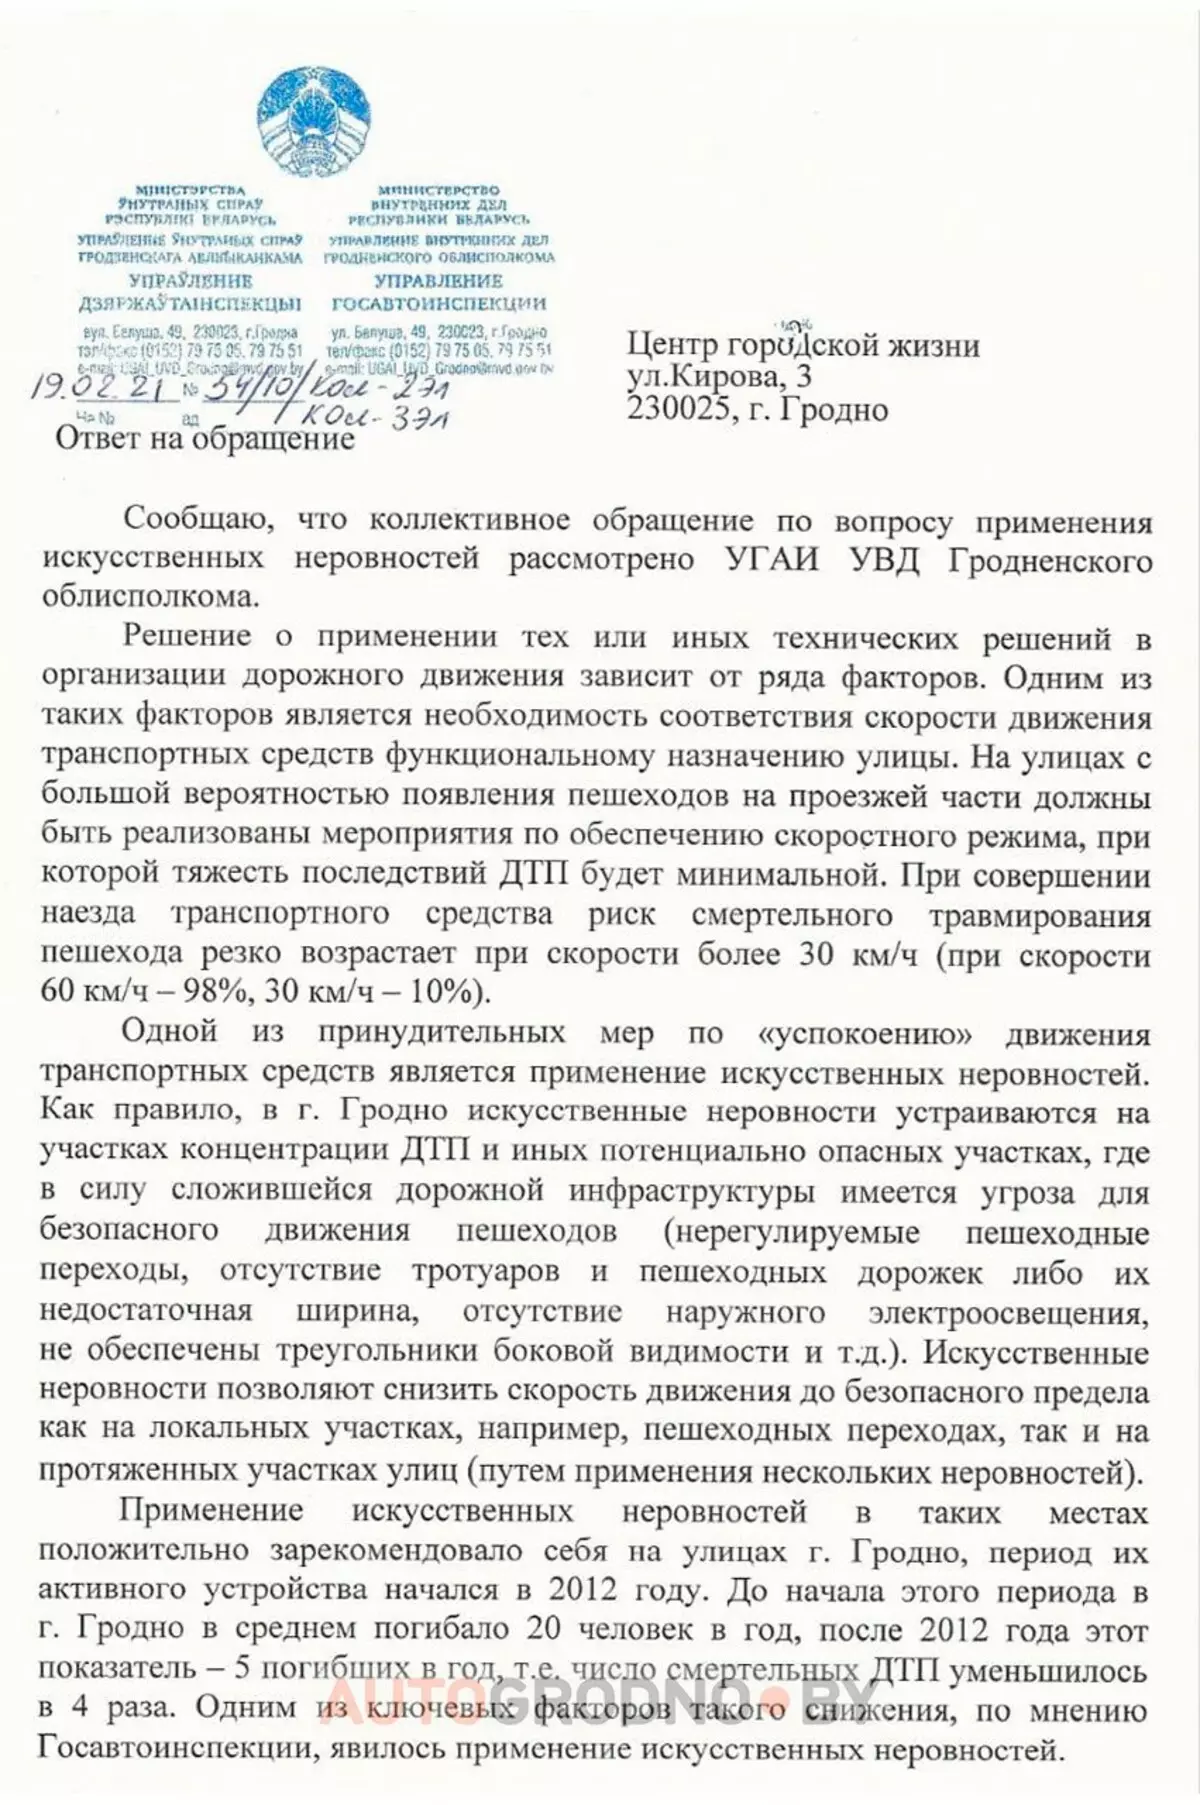 I Grodno-aktivister modtog et svar på andragendet for at reducere antallet af 